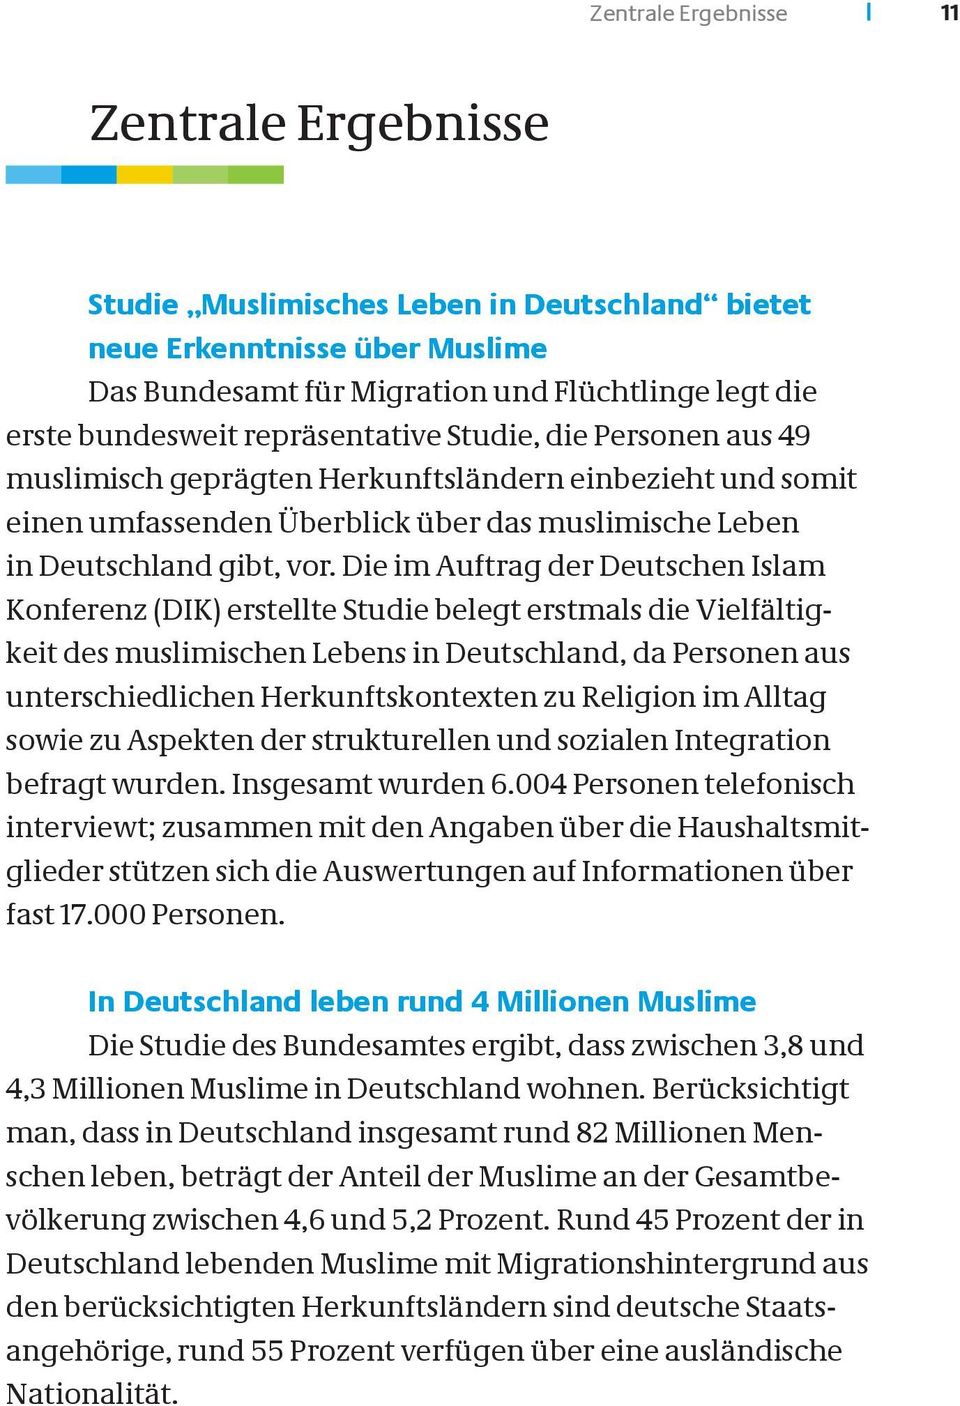 Die im Auftrag der Deutschen Islam Konferenz (DIK) erstellte Studie belegt erstmals die Vielfältigkeit des muslimischen Lebens in Deutschland, da Personen aus unterschiedlichen Herkunftskontexten zu